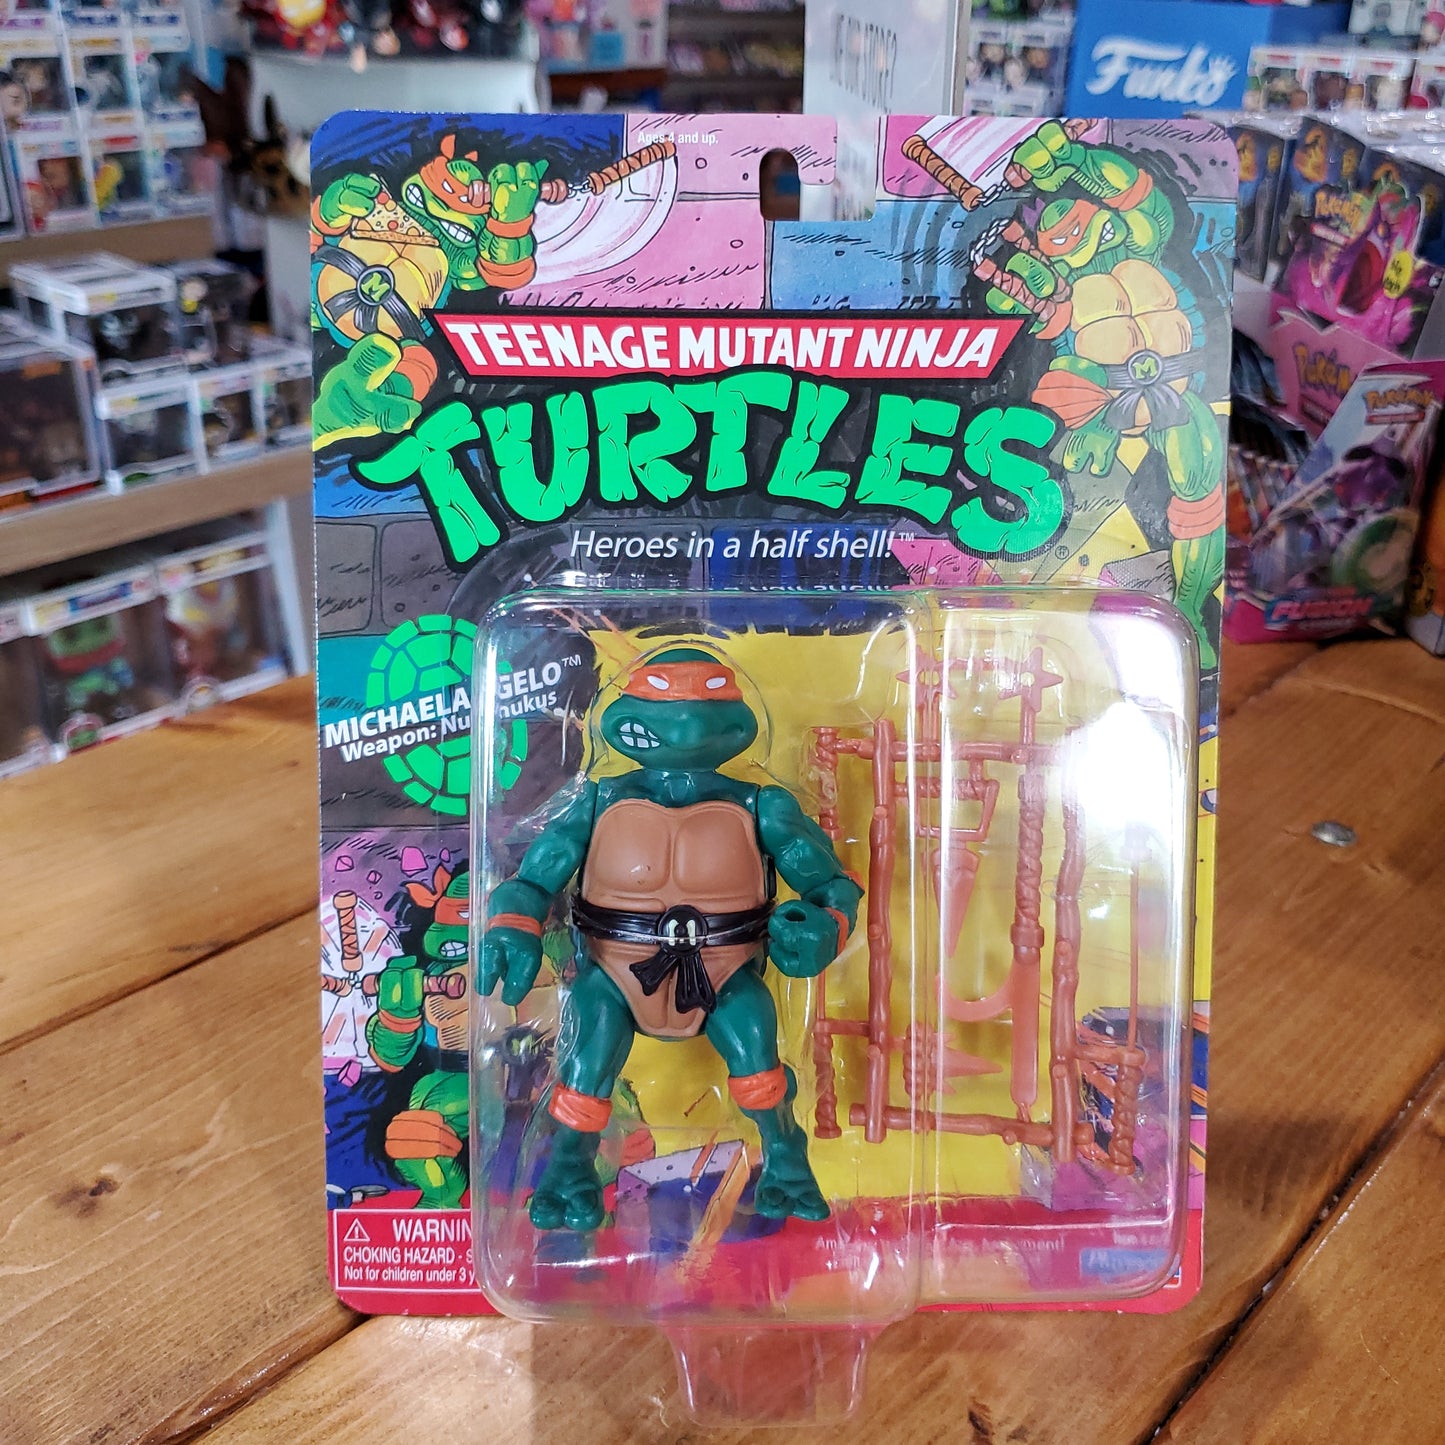 Teenage Mutant Ninja Turtles Action Figures by Playmates (2021)